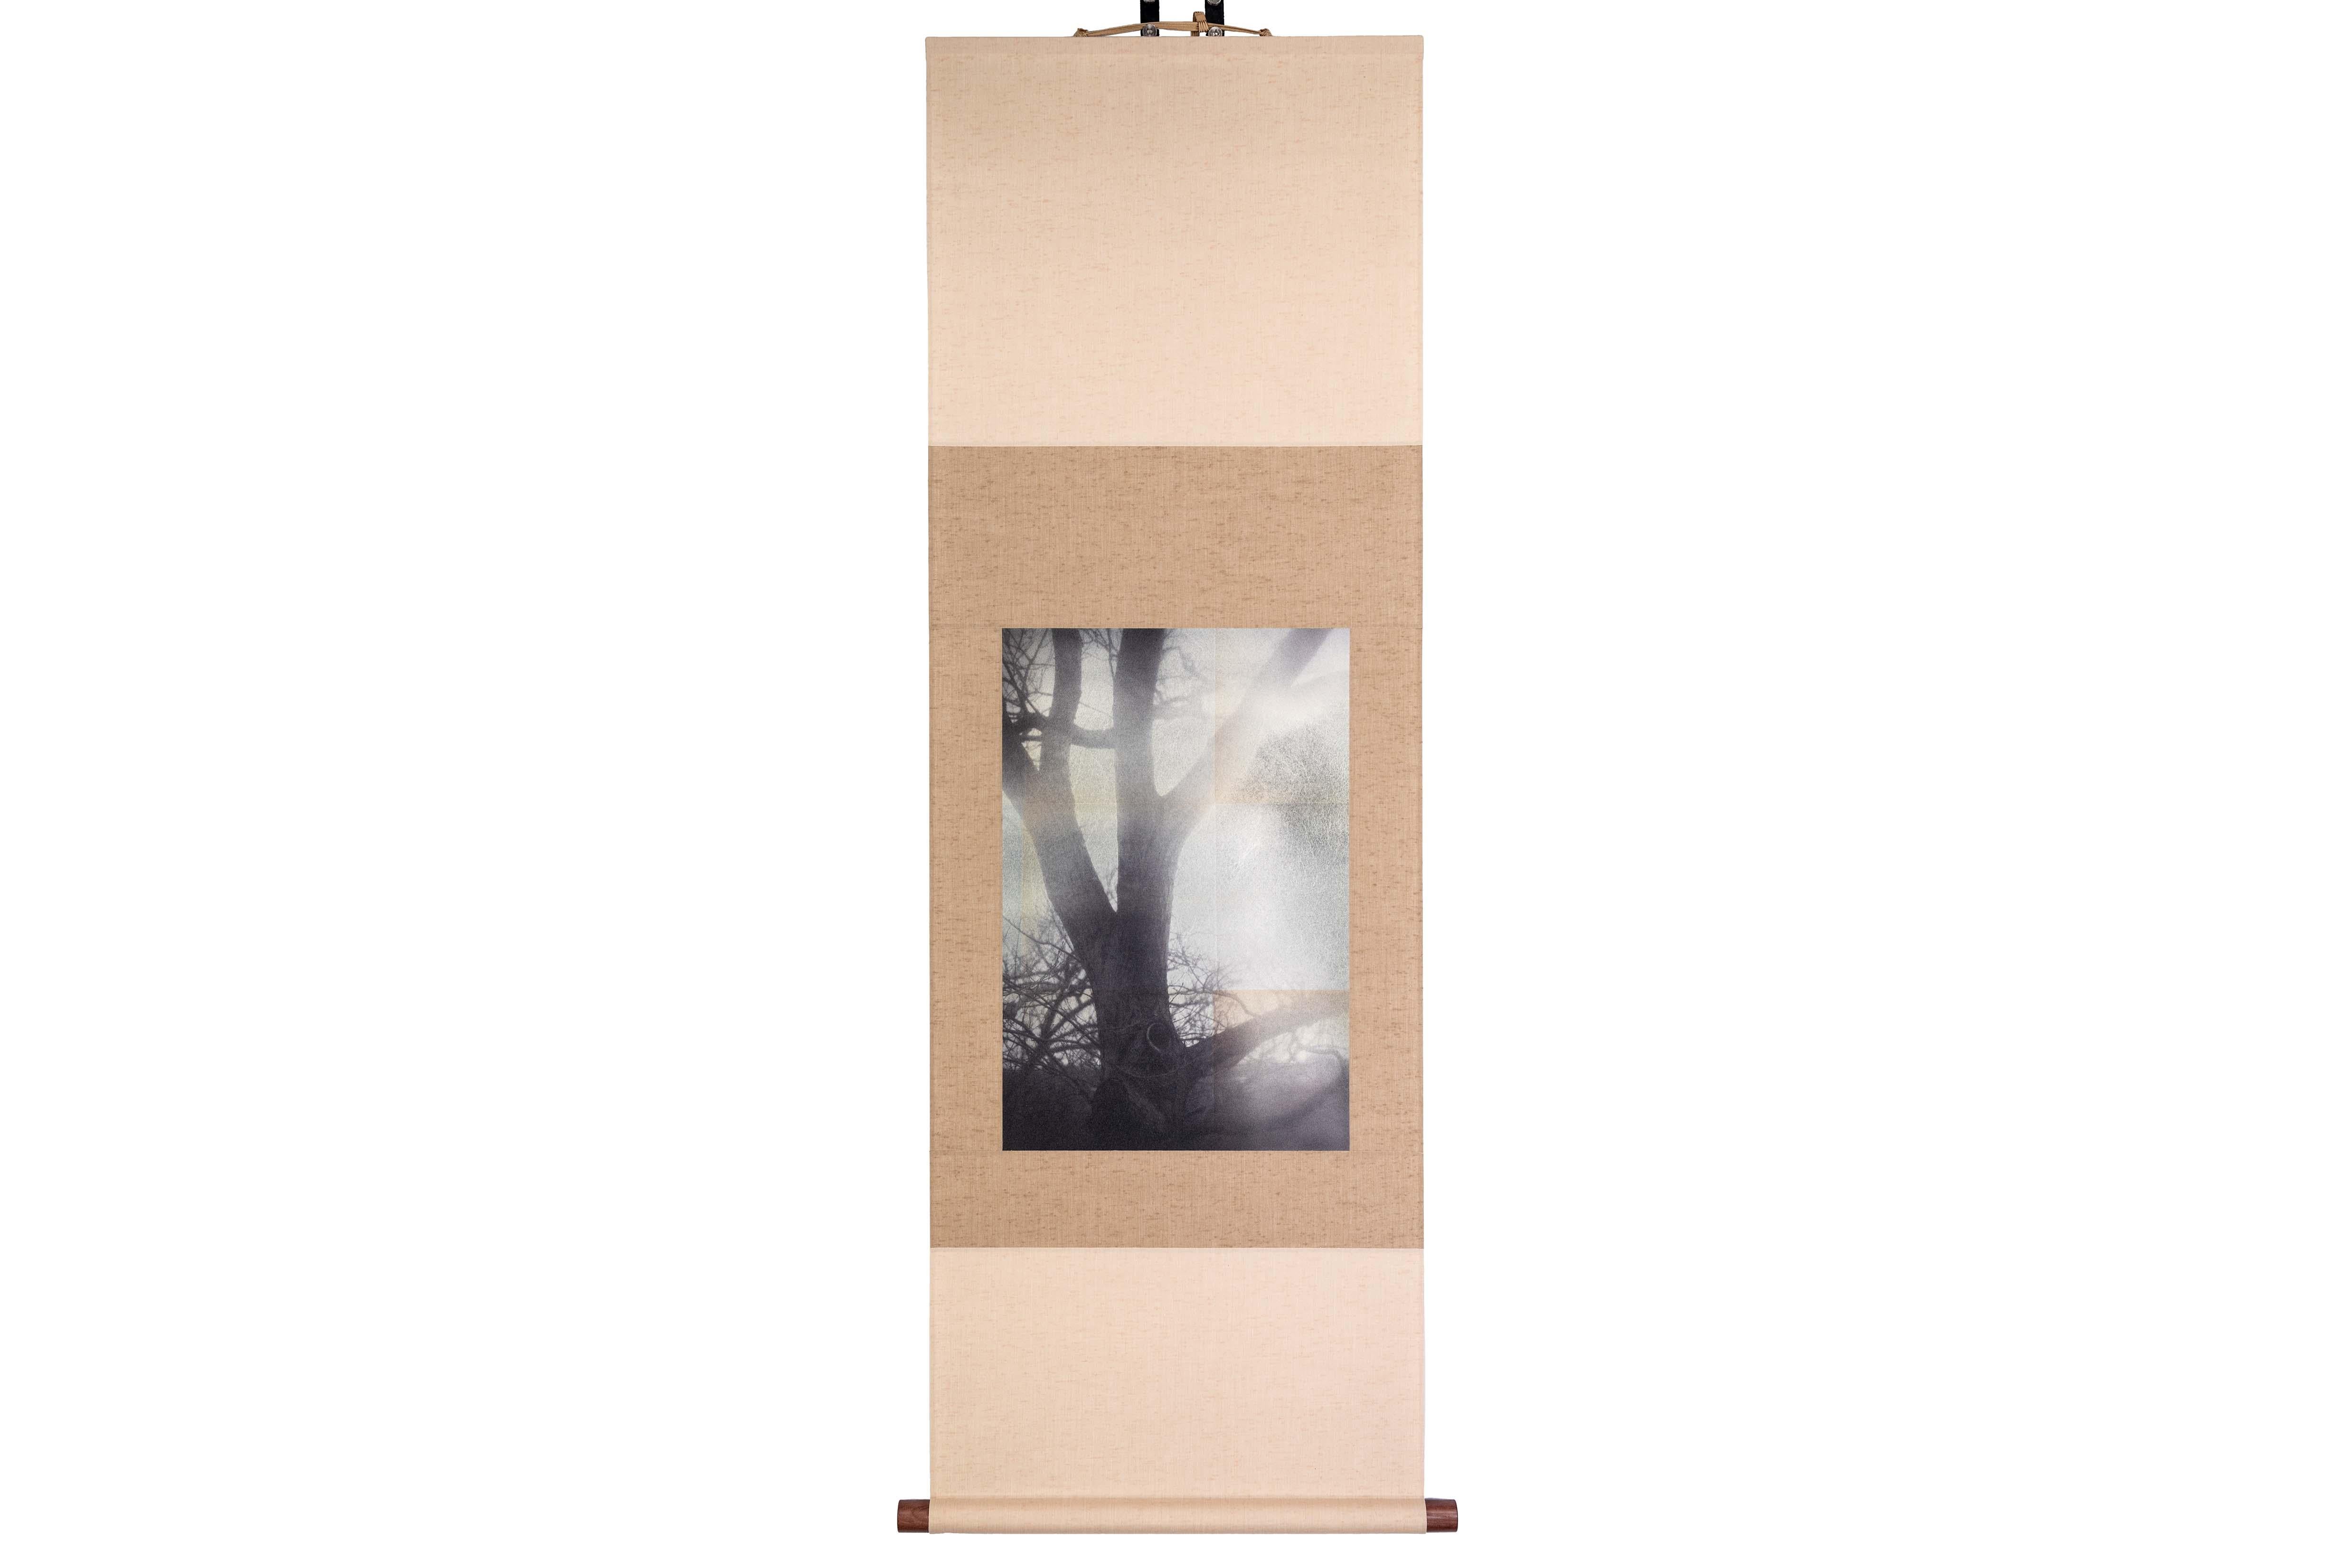 Tirage UV d'une photographie numérique sur feuille d'étain sur papier et monté sur rouleau de tissu
 
Kojun est un artiste autodidacte américain multimédia né en 1977 et basé à Tokyo, au Japon, depuis 1999. Le projet Kojun, lancé en 2010, explore